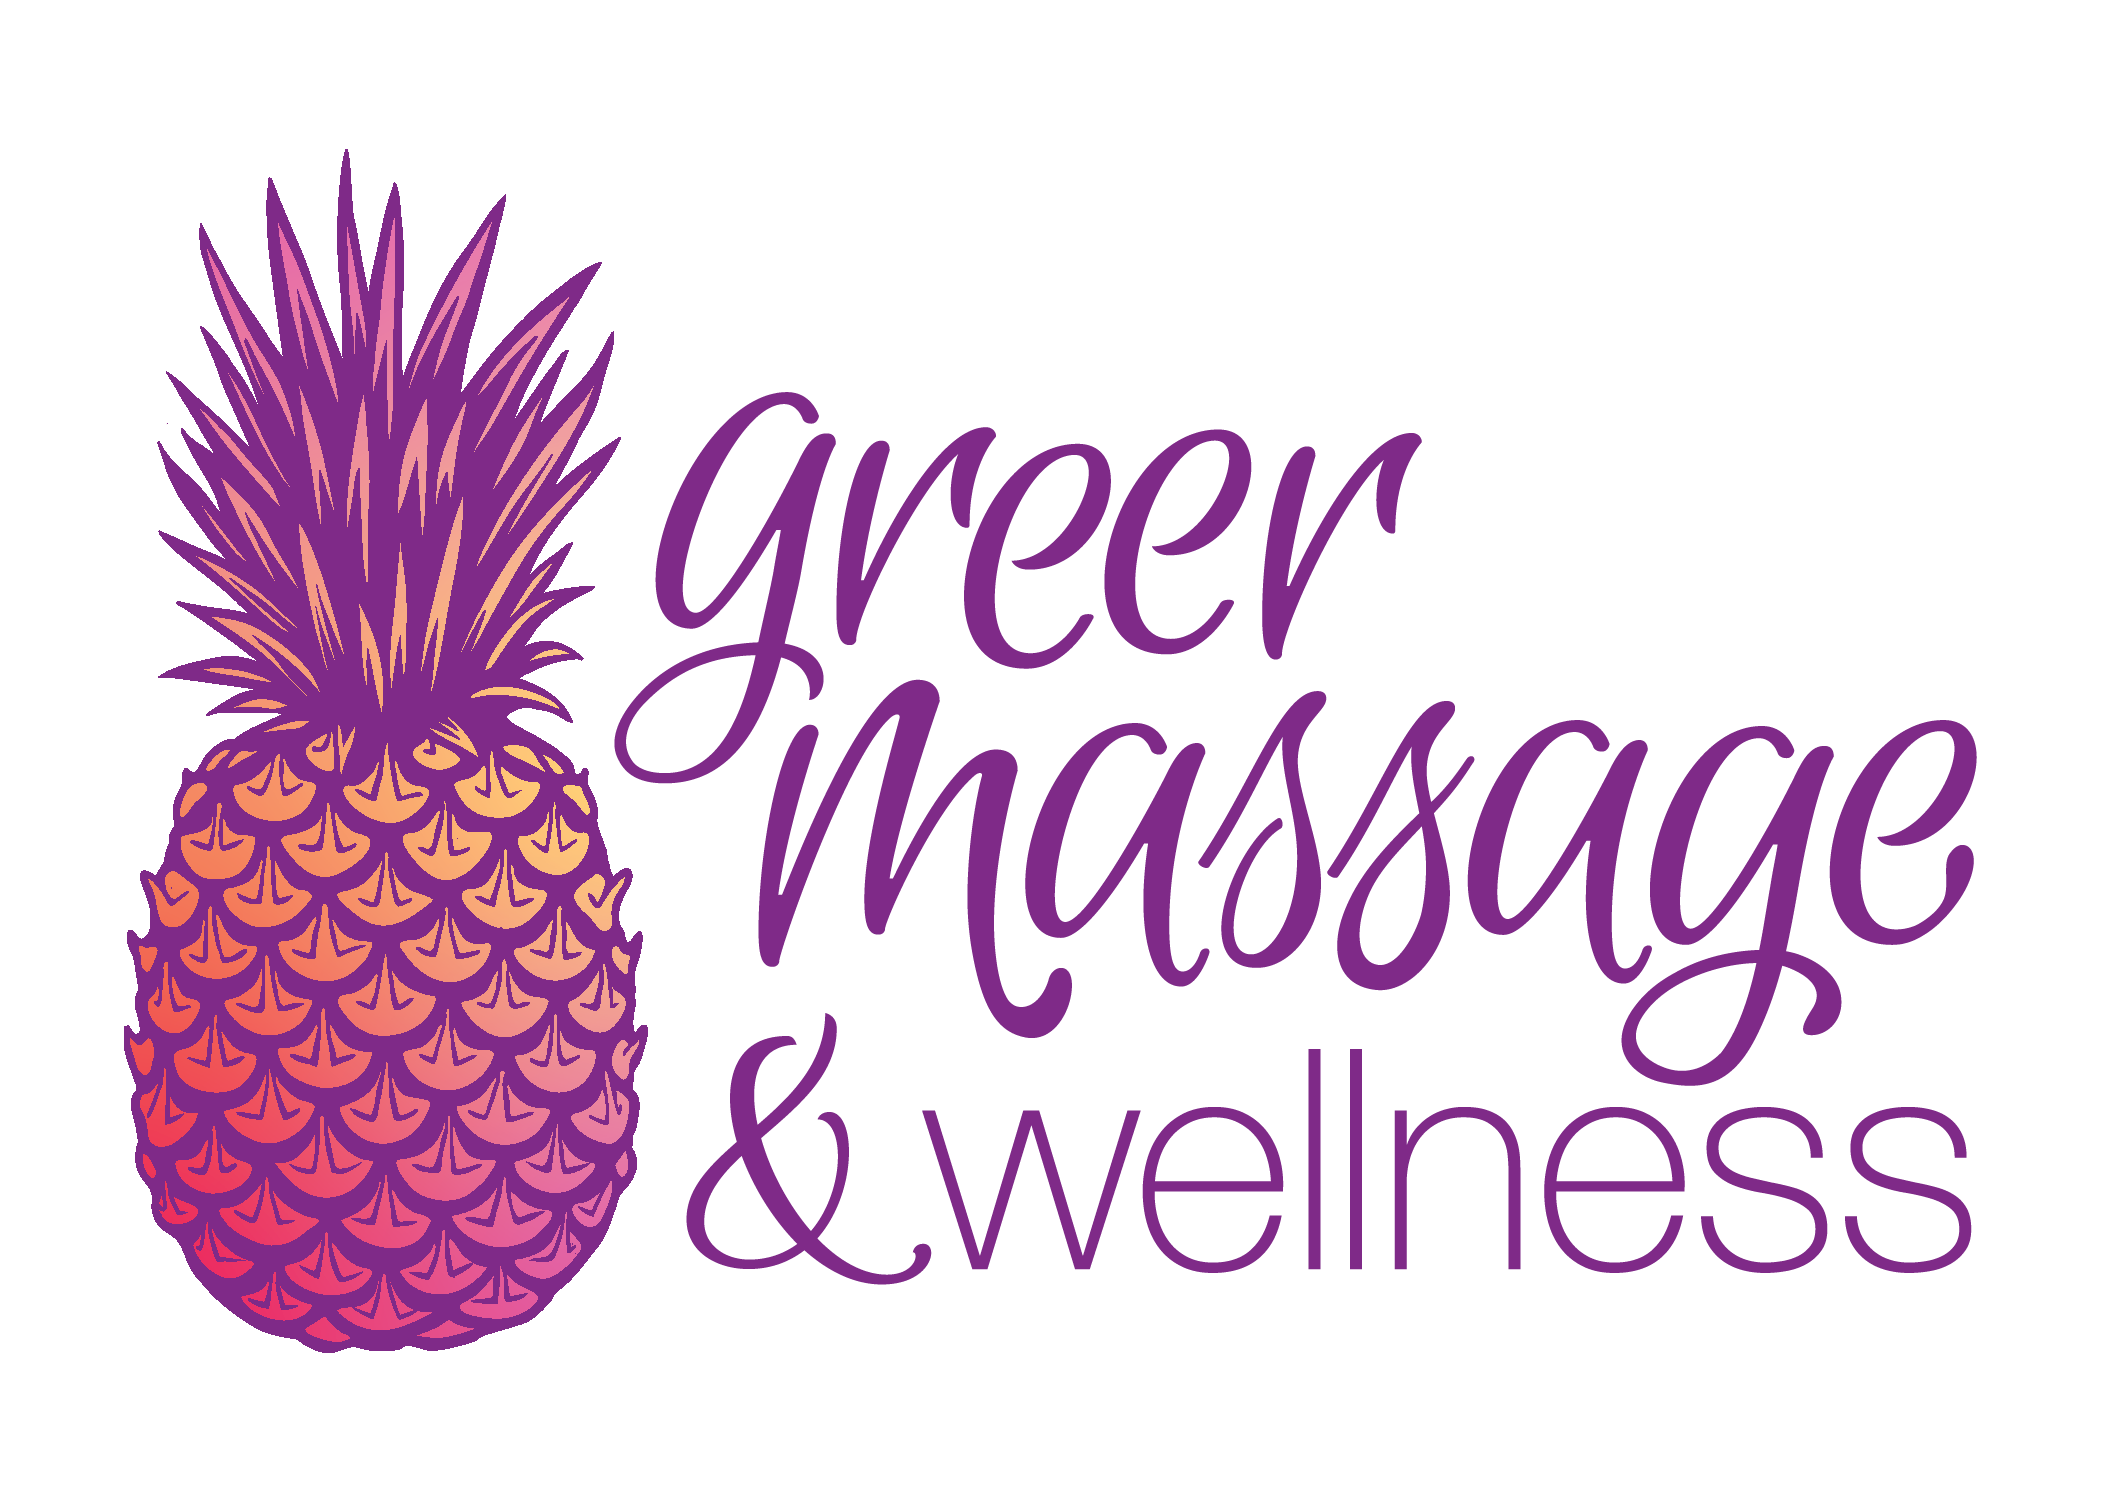 Greer Massage and Wellness